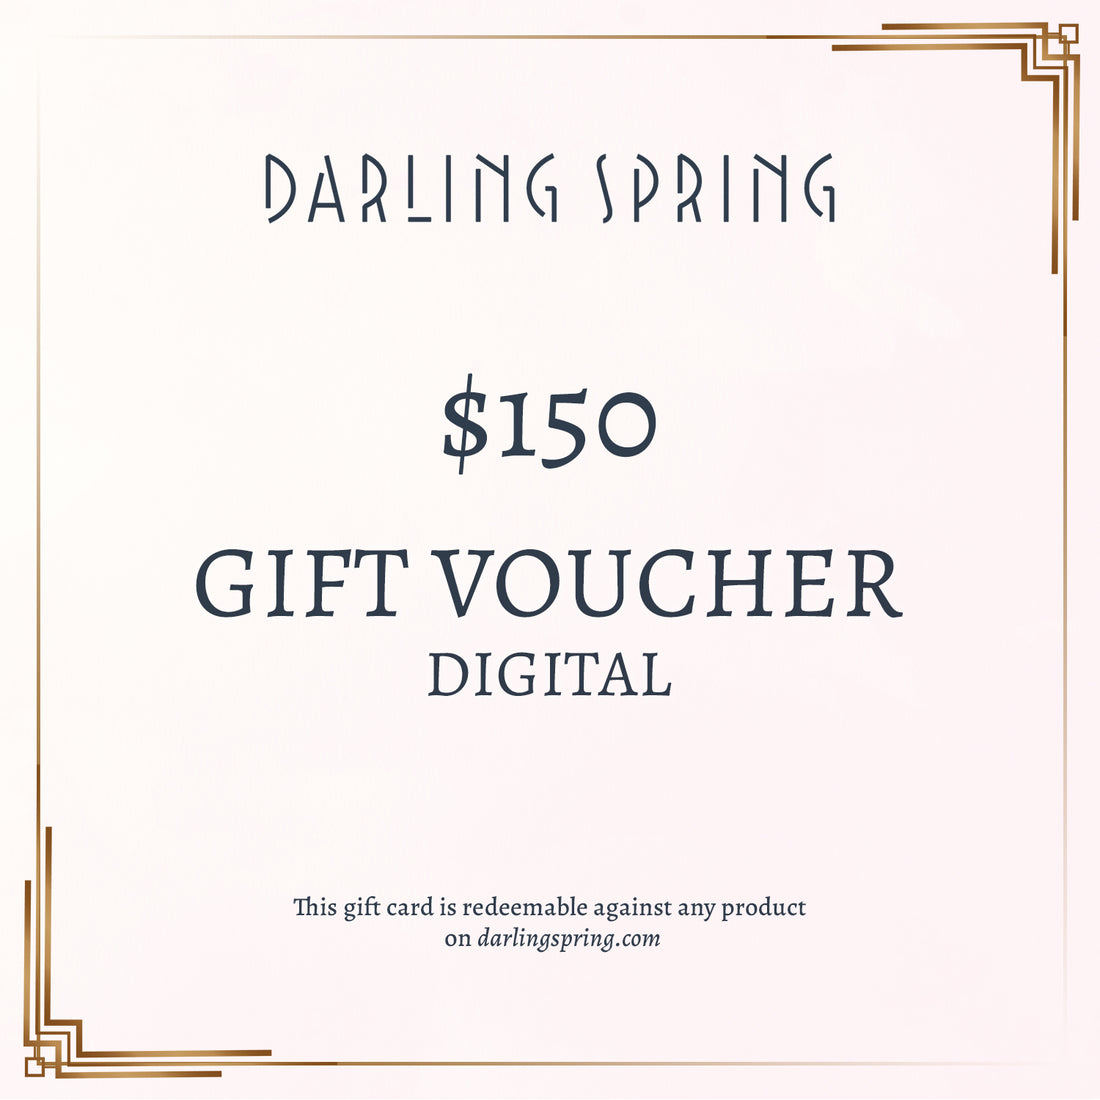 Darling Spring Digital Gift Voucher - Darling Spring